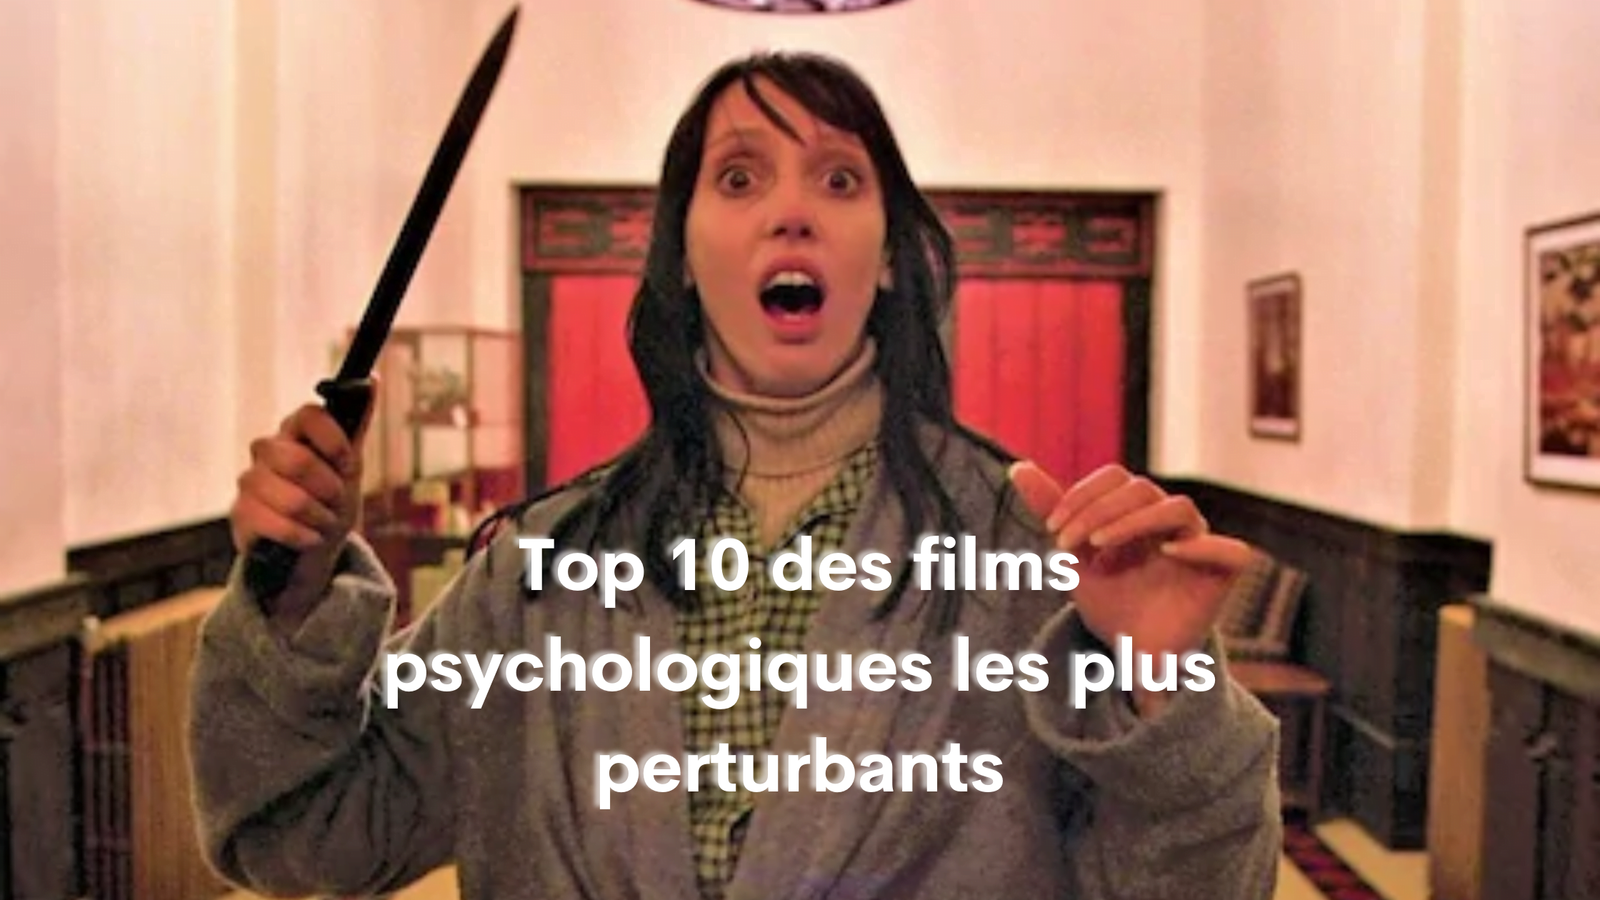 You are currently viewing Top 10 des films psychologiques les plus perturbants